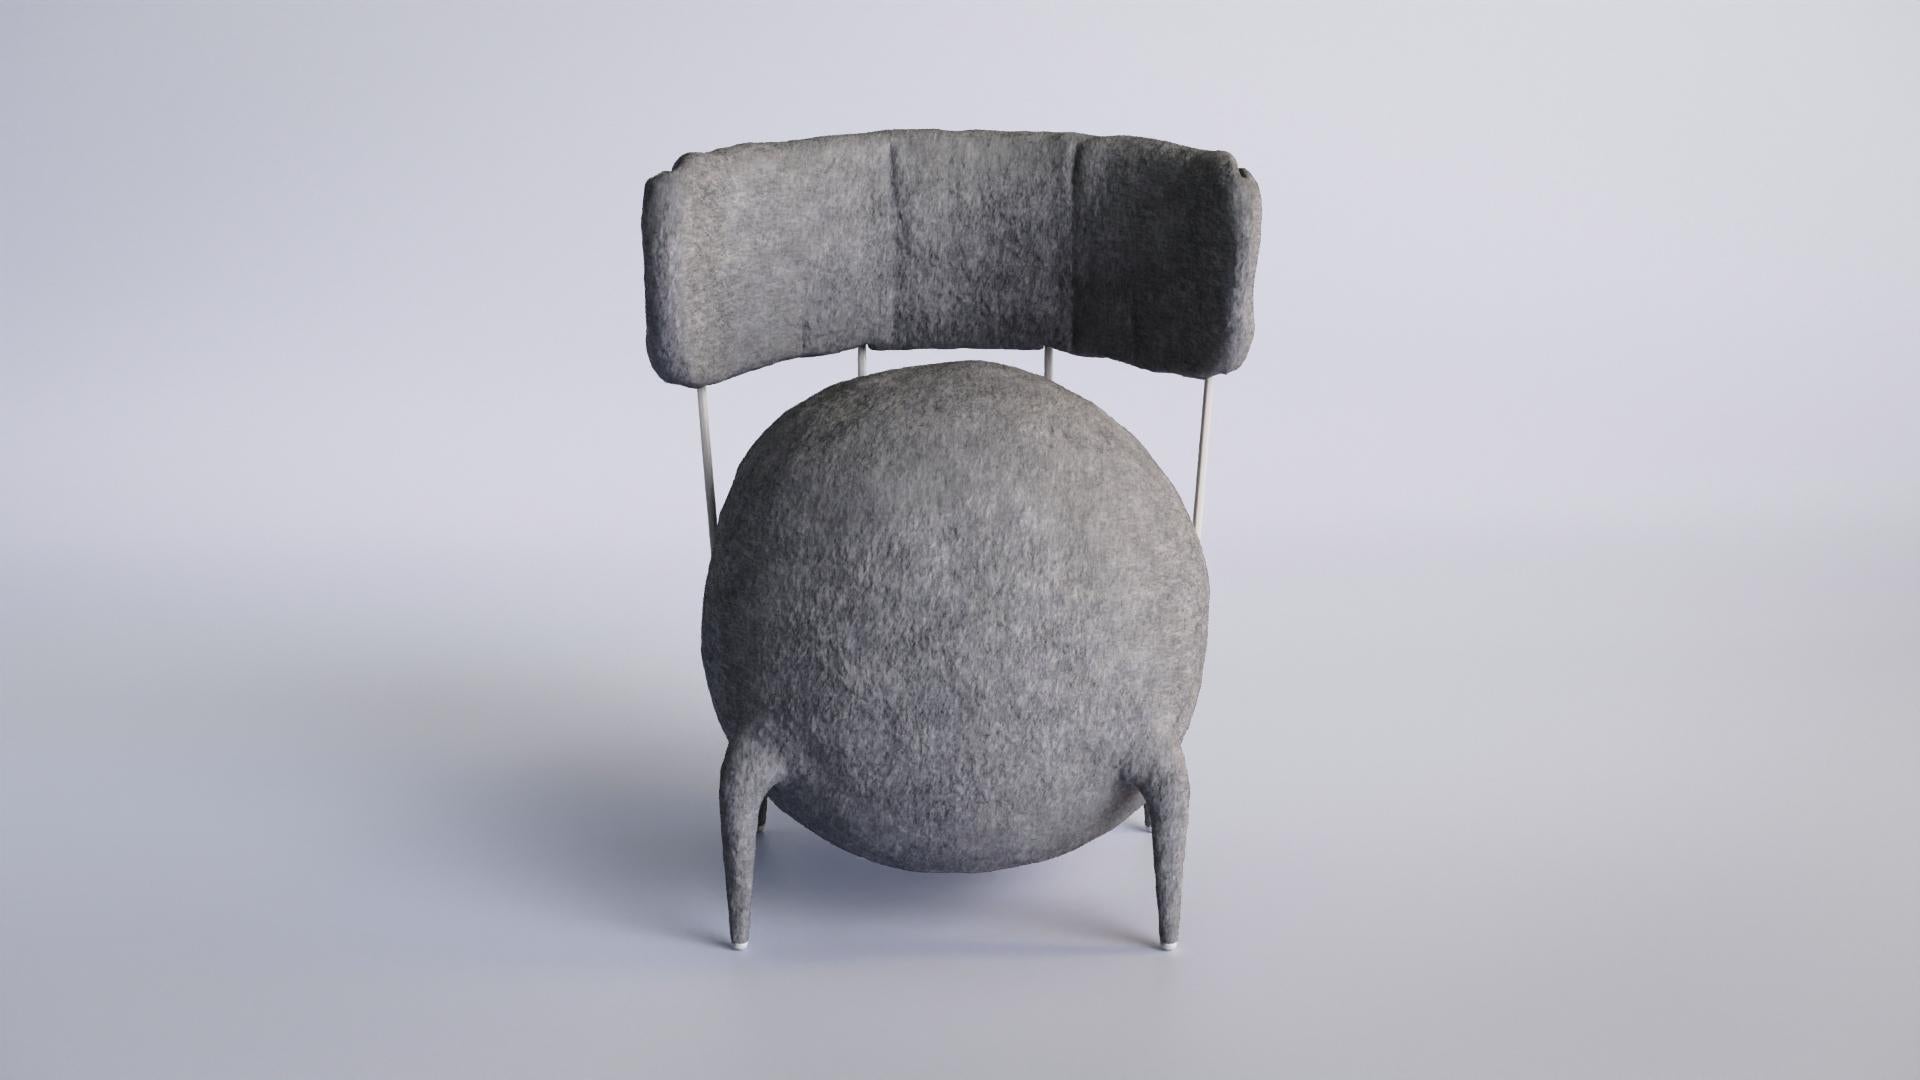 Lymphochair-Stuhl von Taras Yoom
Limitierte Auflage von 50 Stück
Abmessungen: T 62 x B 62 x H 80 cm
MATERIALIEN: Holz, Metall, Filz, PU.

Der Stuhl besteht aus einem tiefweißen, rosafarbenen Filzbezug, silbernen oder weißen Metallstäben und blauen